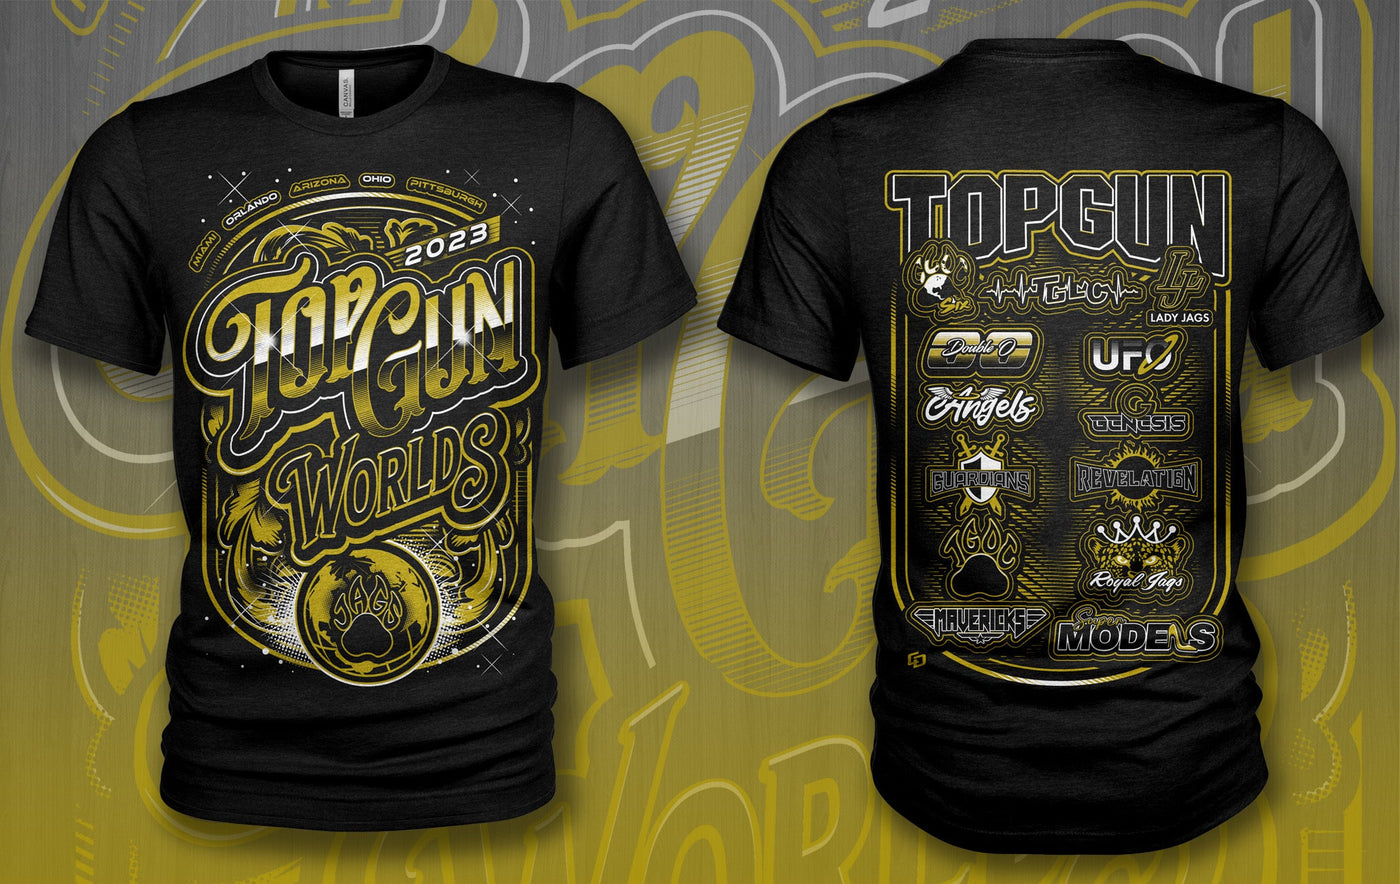 Buy Official Top Gun Merchandise Online – Shop The Arena